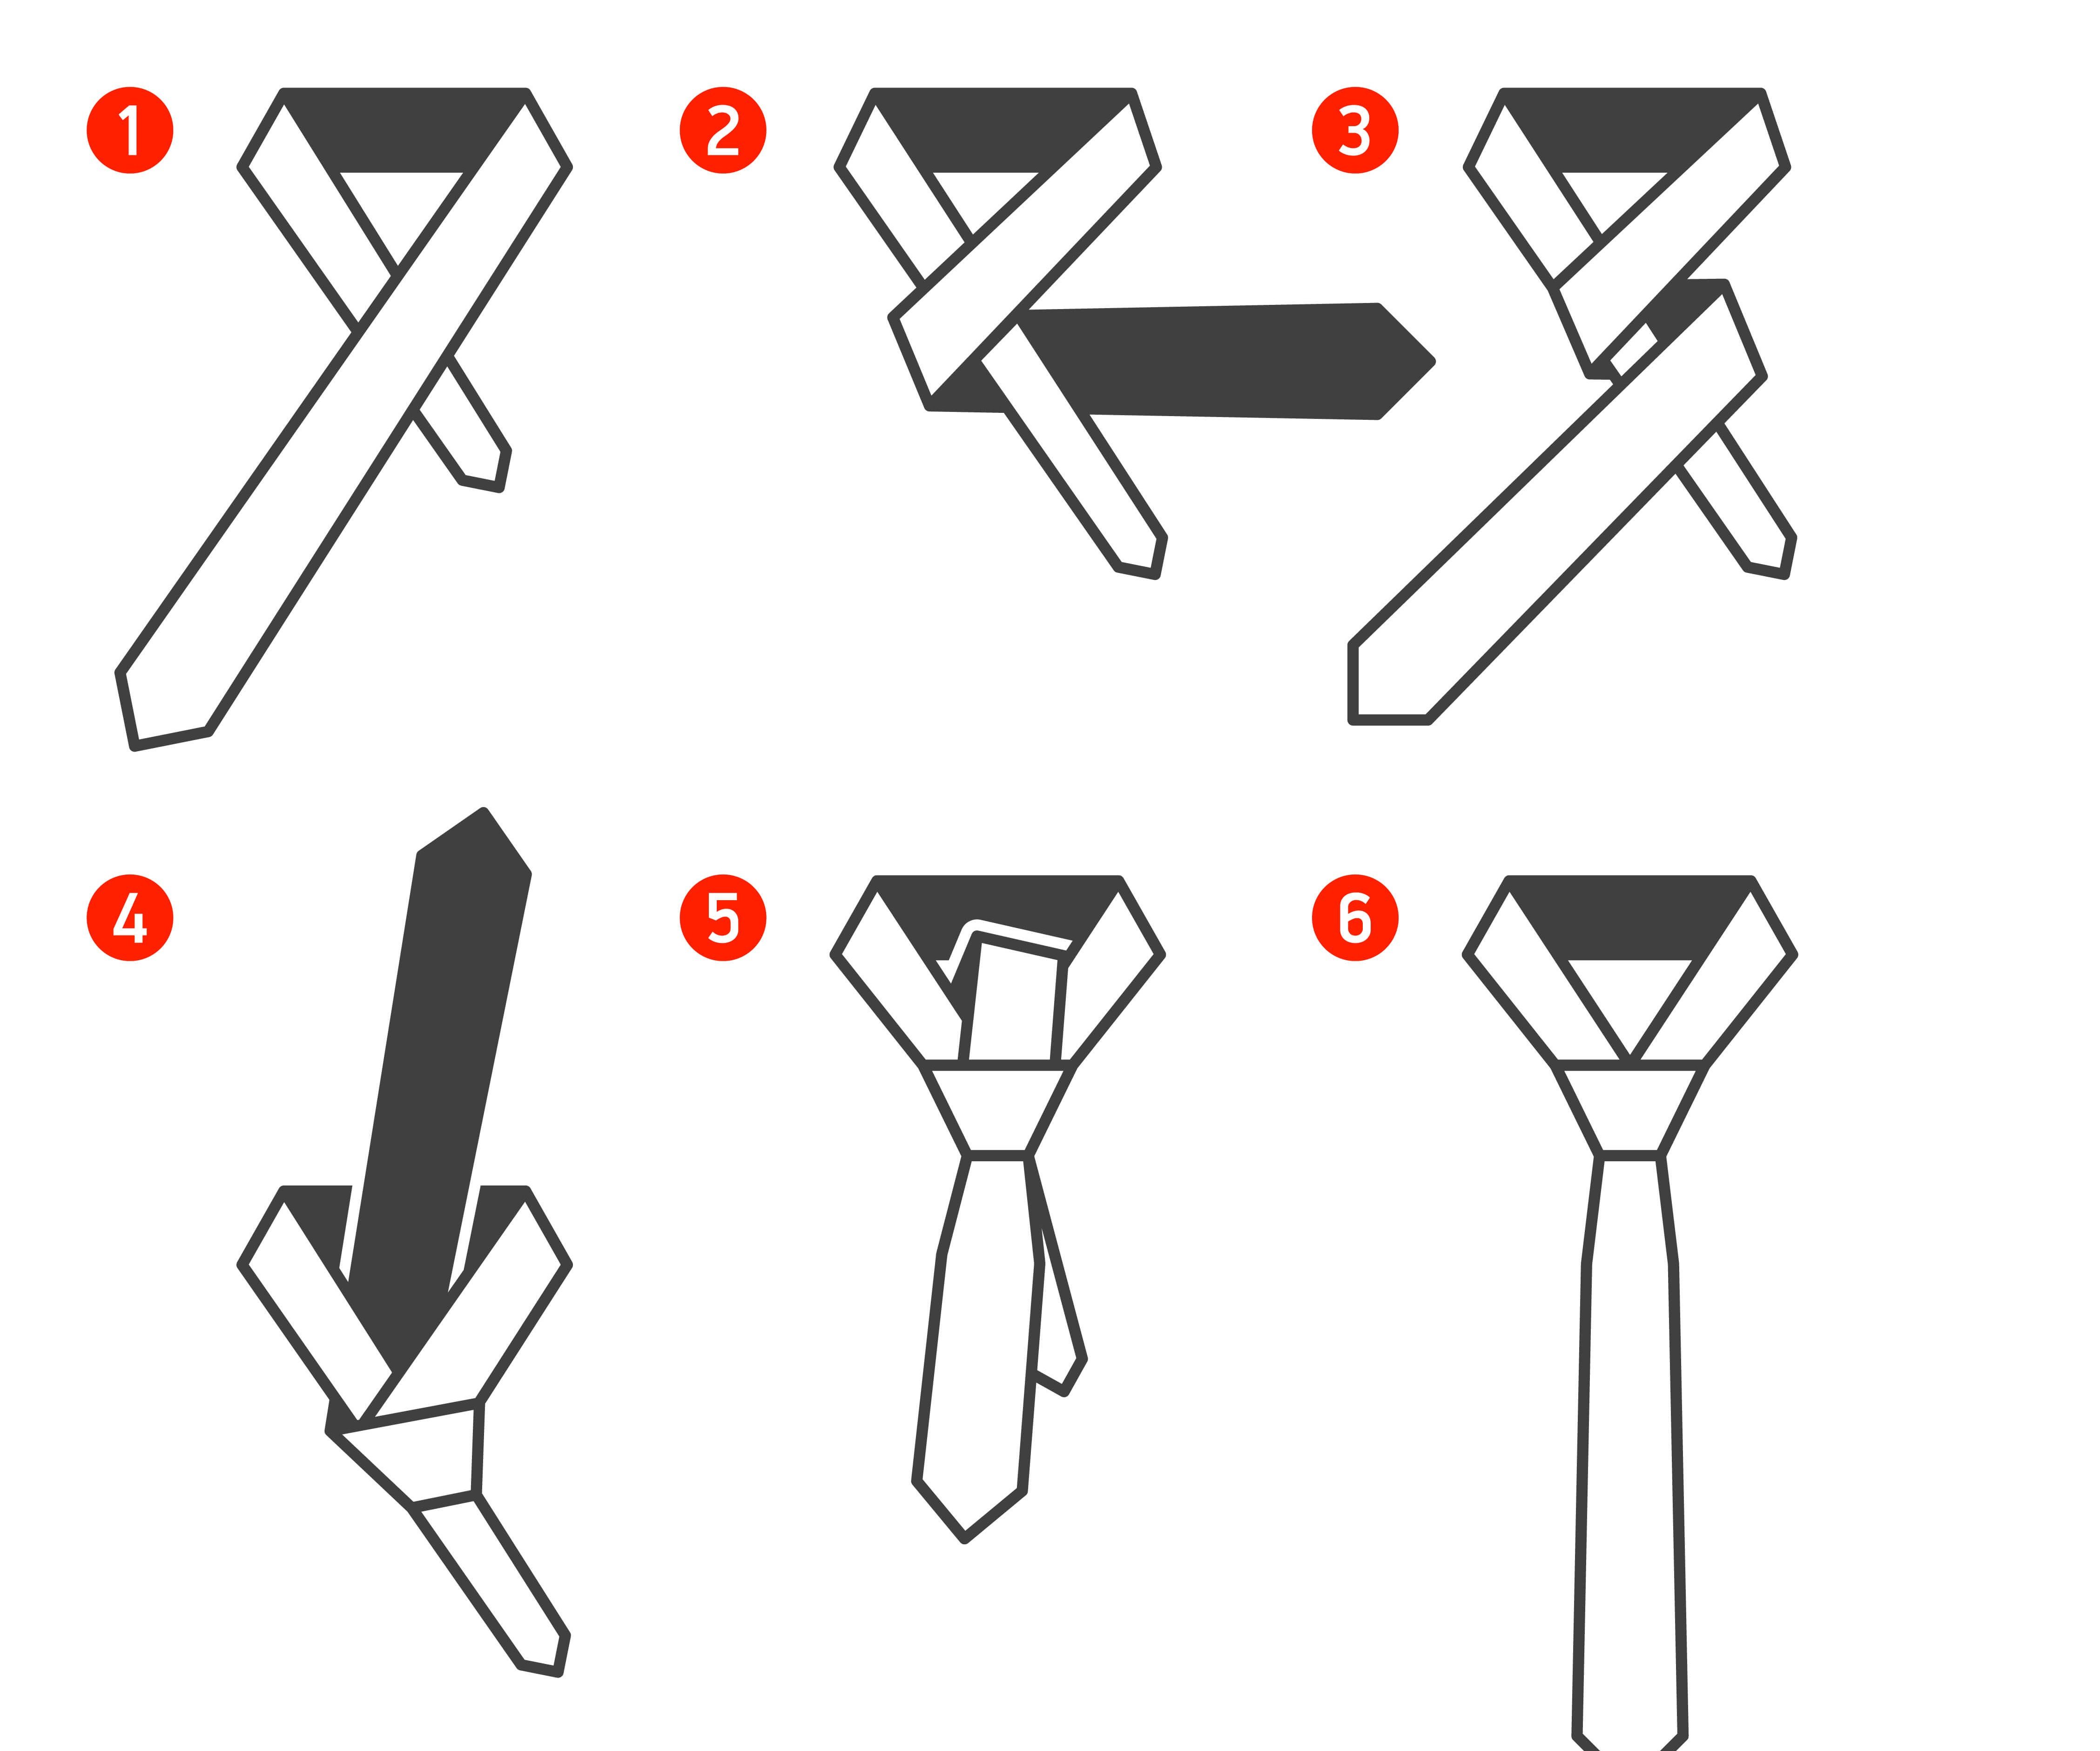 Завязывание галстука в картинках. Простая схема завязывания галстука. Схема поэтапного завязывания галстука. Галстук схема завязки завязывания. Двойной Виндзорский узел галстука.